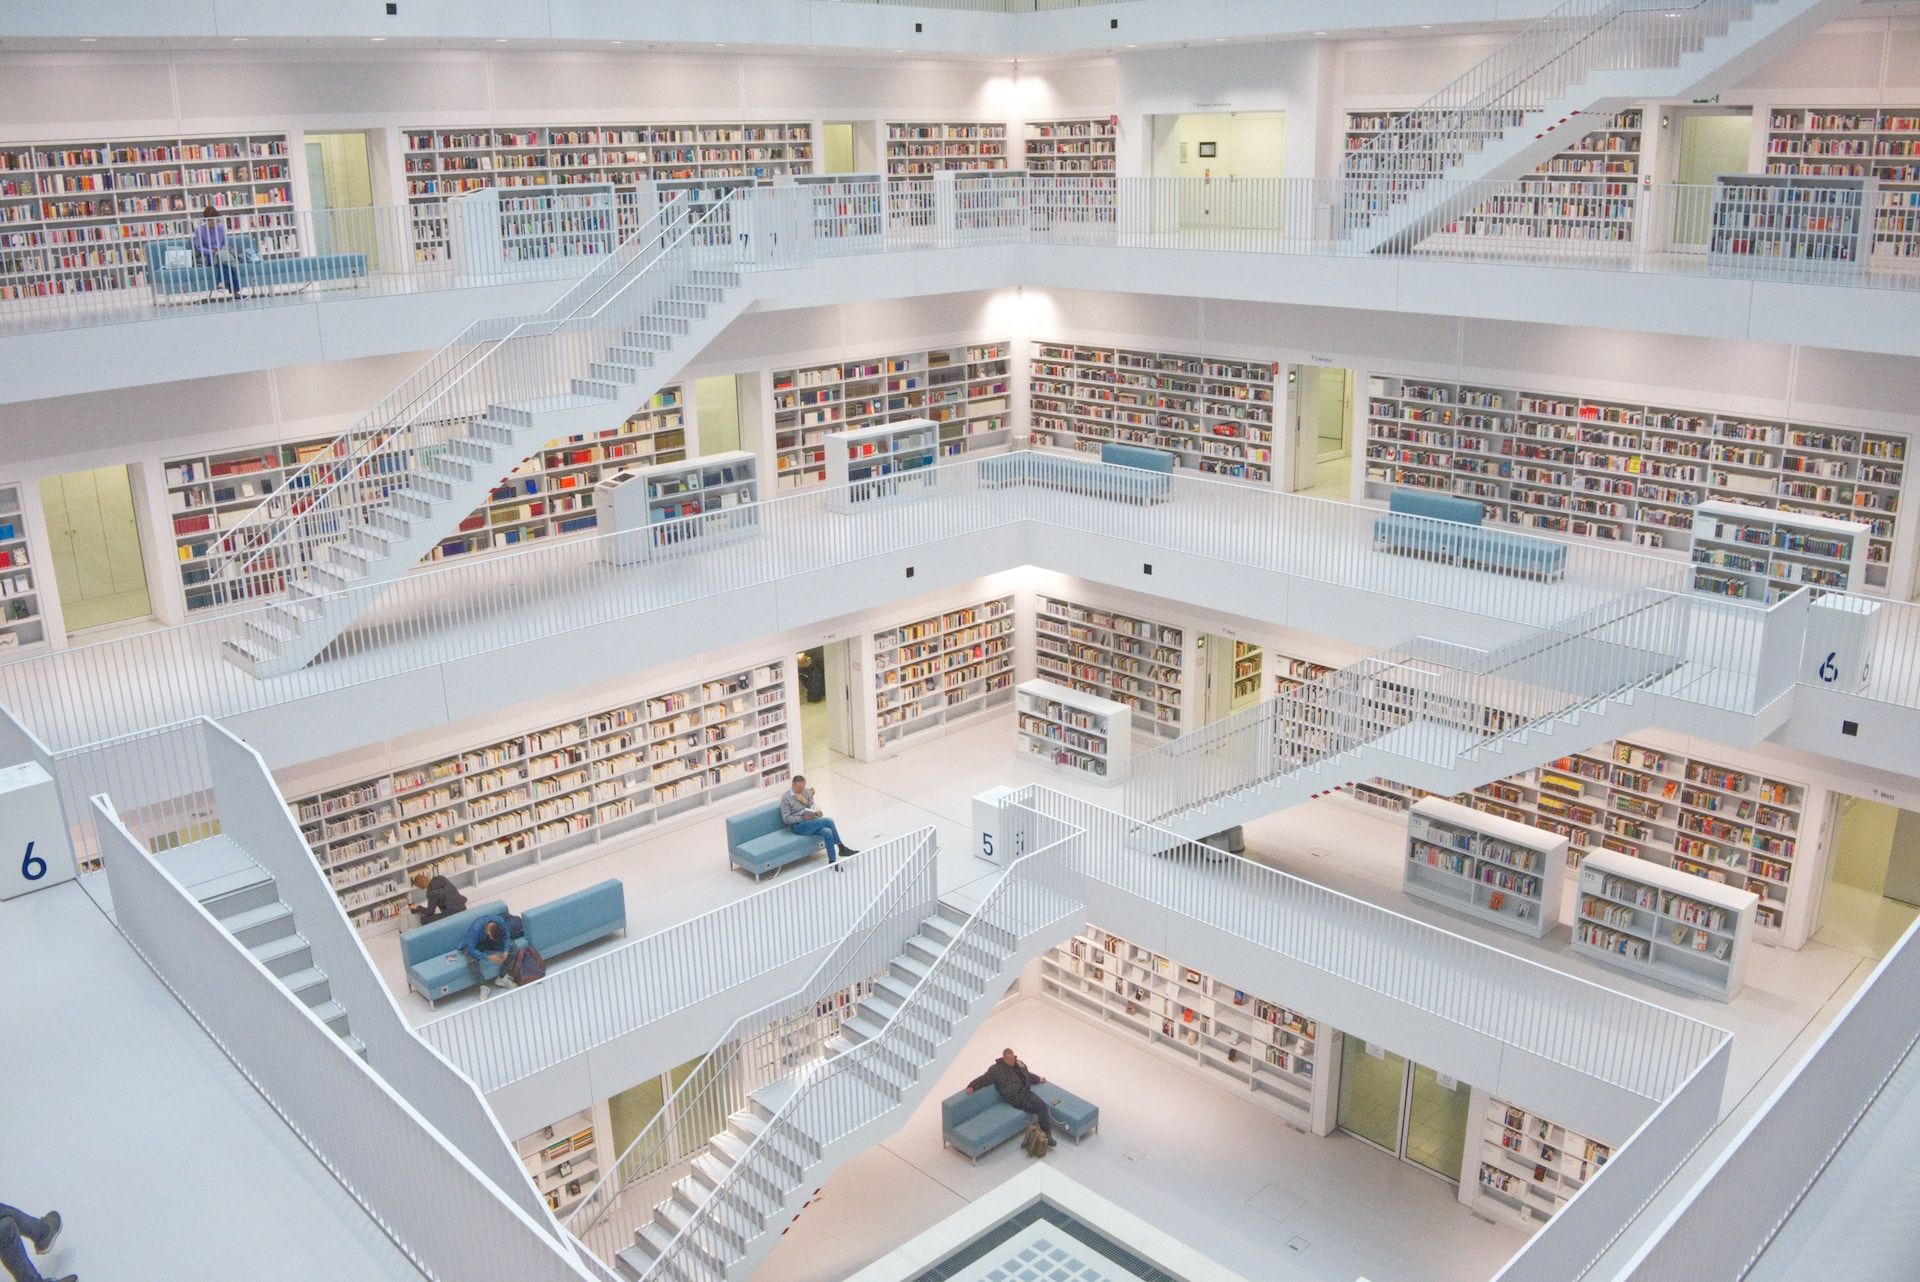 Bibliothèque sur plusieurs étage, blanche et lumineuse, avec des escaliers et des lecteurs isolés - Photo de Niklas Ohlrogge sur https://unsplash.com/fr/photos/j-0olYcaihg